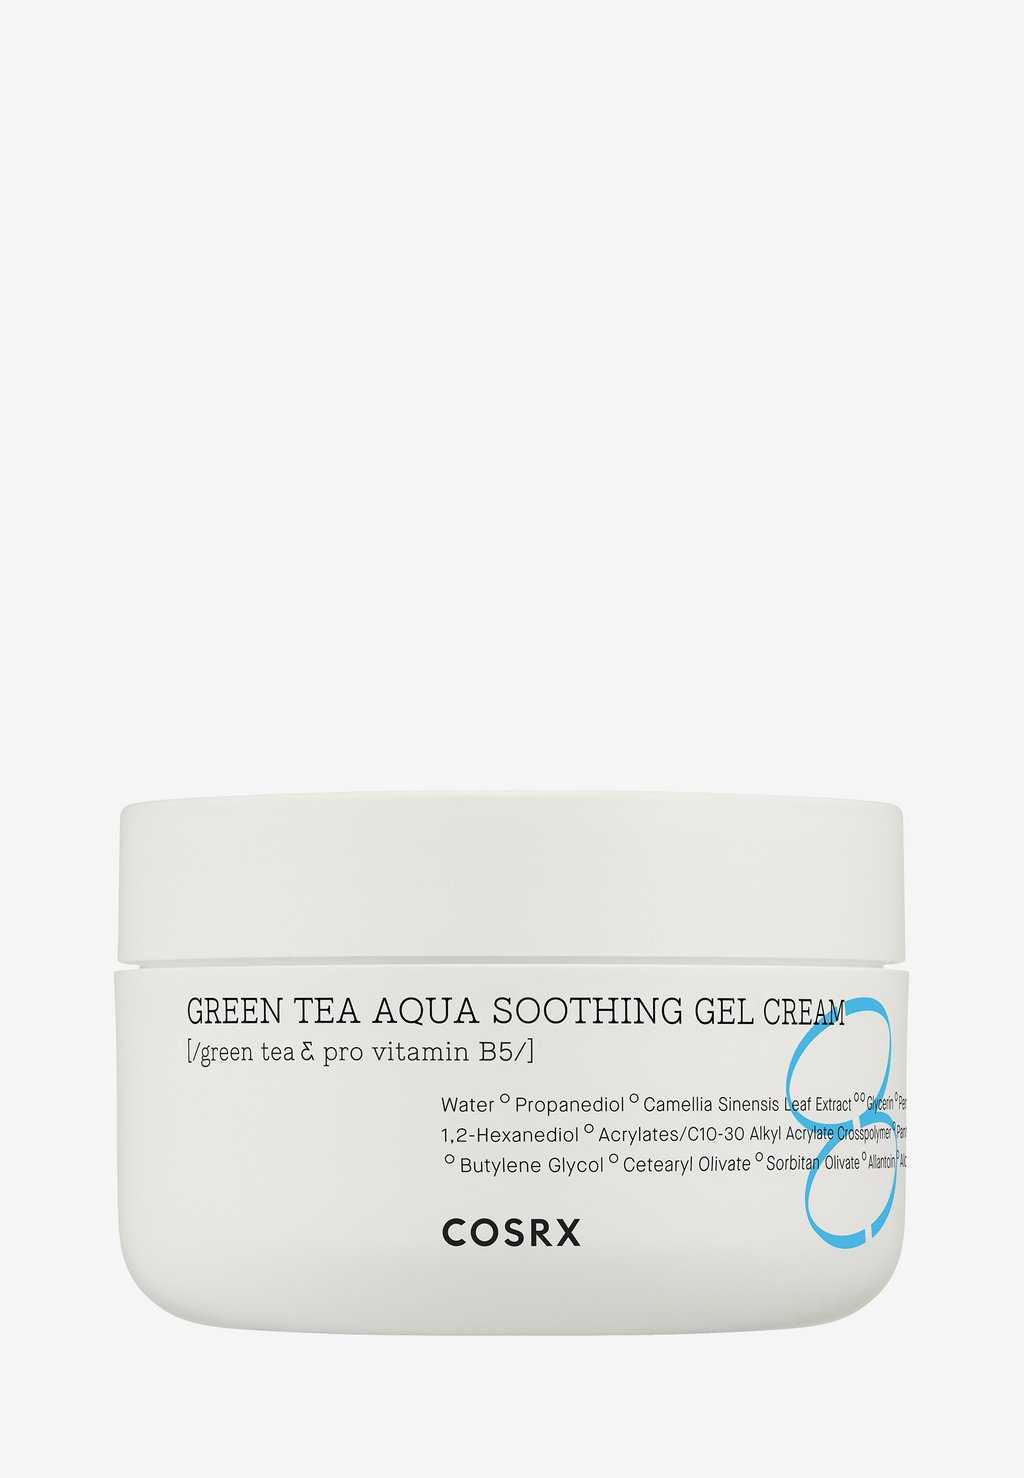 Дневной крем Green Tea Aqua Soothing Gel Cream COSRX